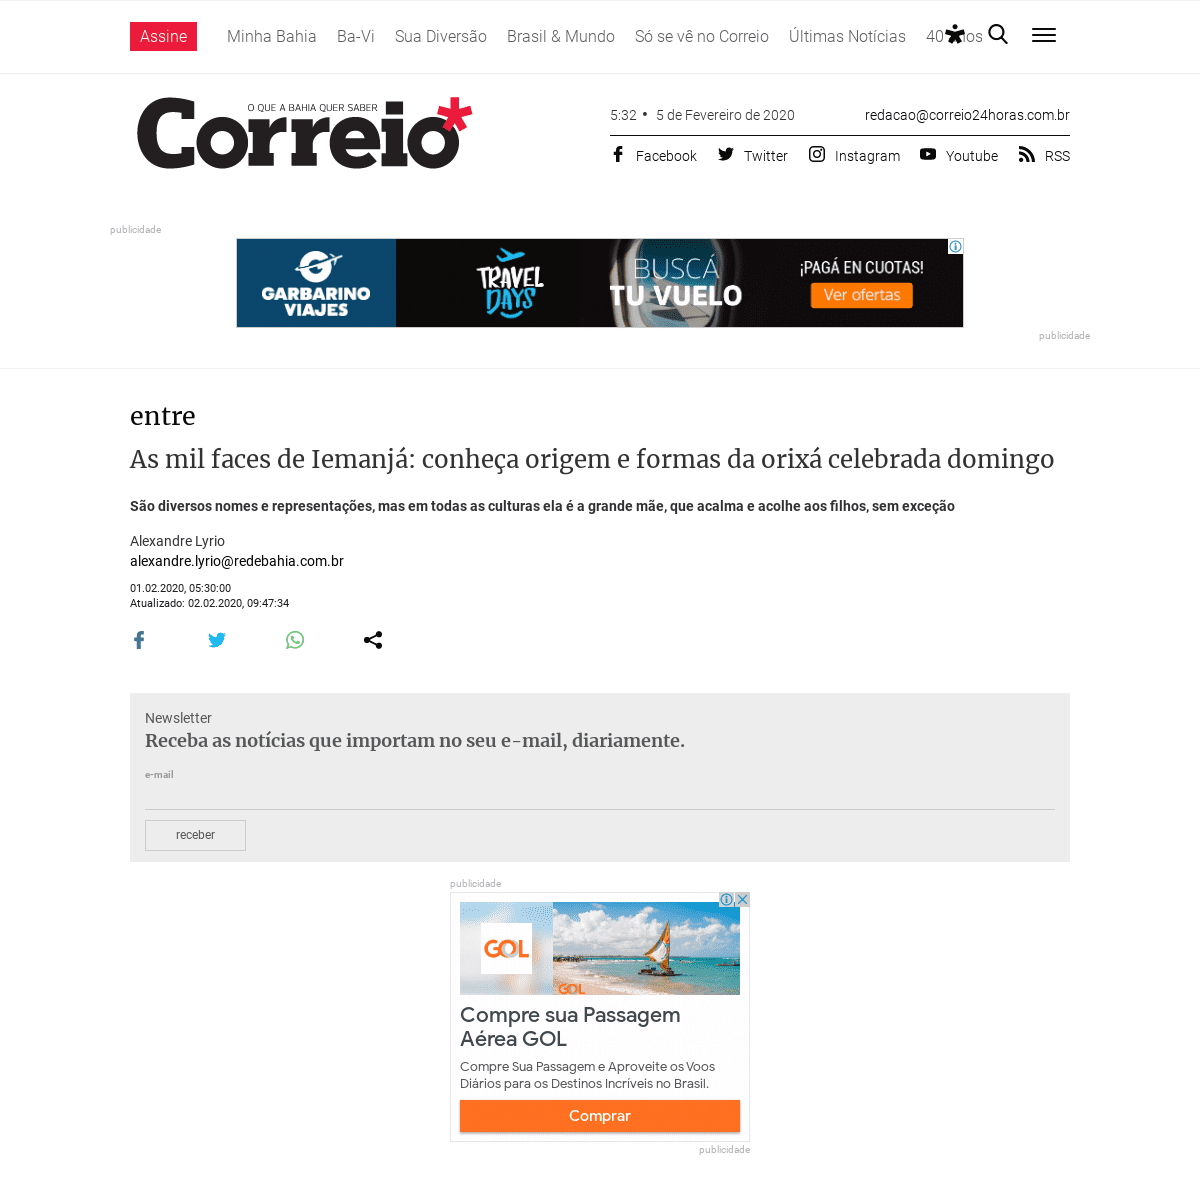 A complete backup of www.correio24horas.com.br/noticia/nid/as-mil-faces-de-iemanja-conheca-origem-e-formas-da-orixa-celebrada-do